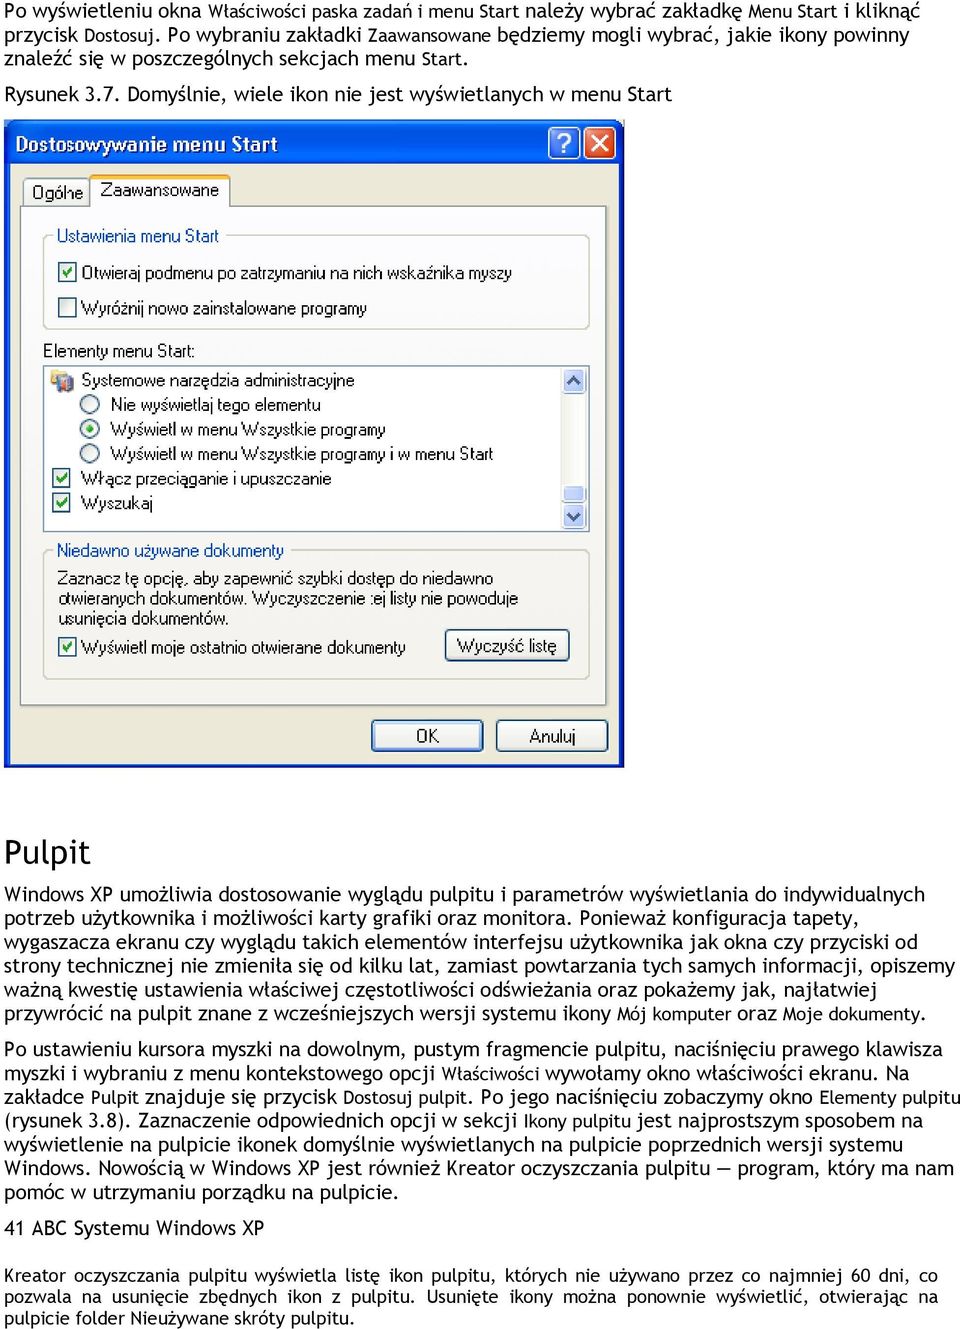 Domyślnie, wiele ikon nie jest wyświetlanych w menu Start Pulpit Windows XP umożliwia dostosowanie wyglądu pulpitu i parametrów wyświetlania do indywidualnych potrzeb użytkownika i możliwości karty